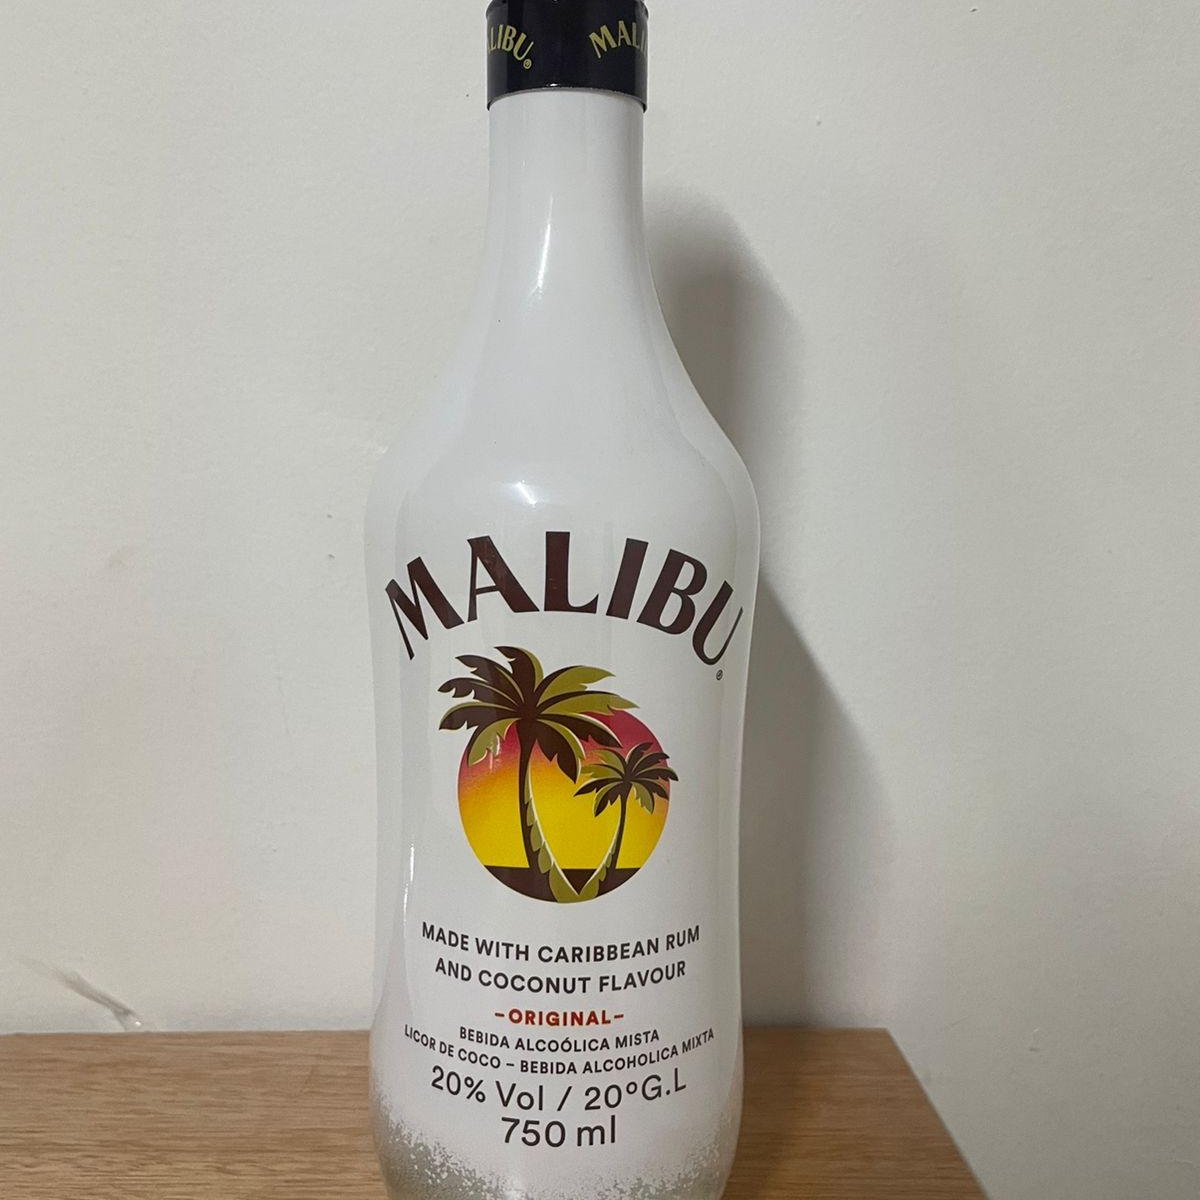 Malibu Bebida com Rum Caribenho Reviews | abillion